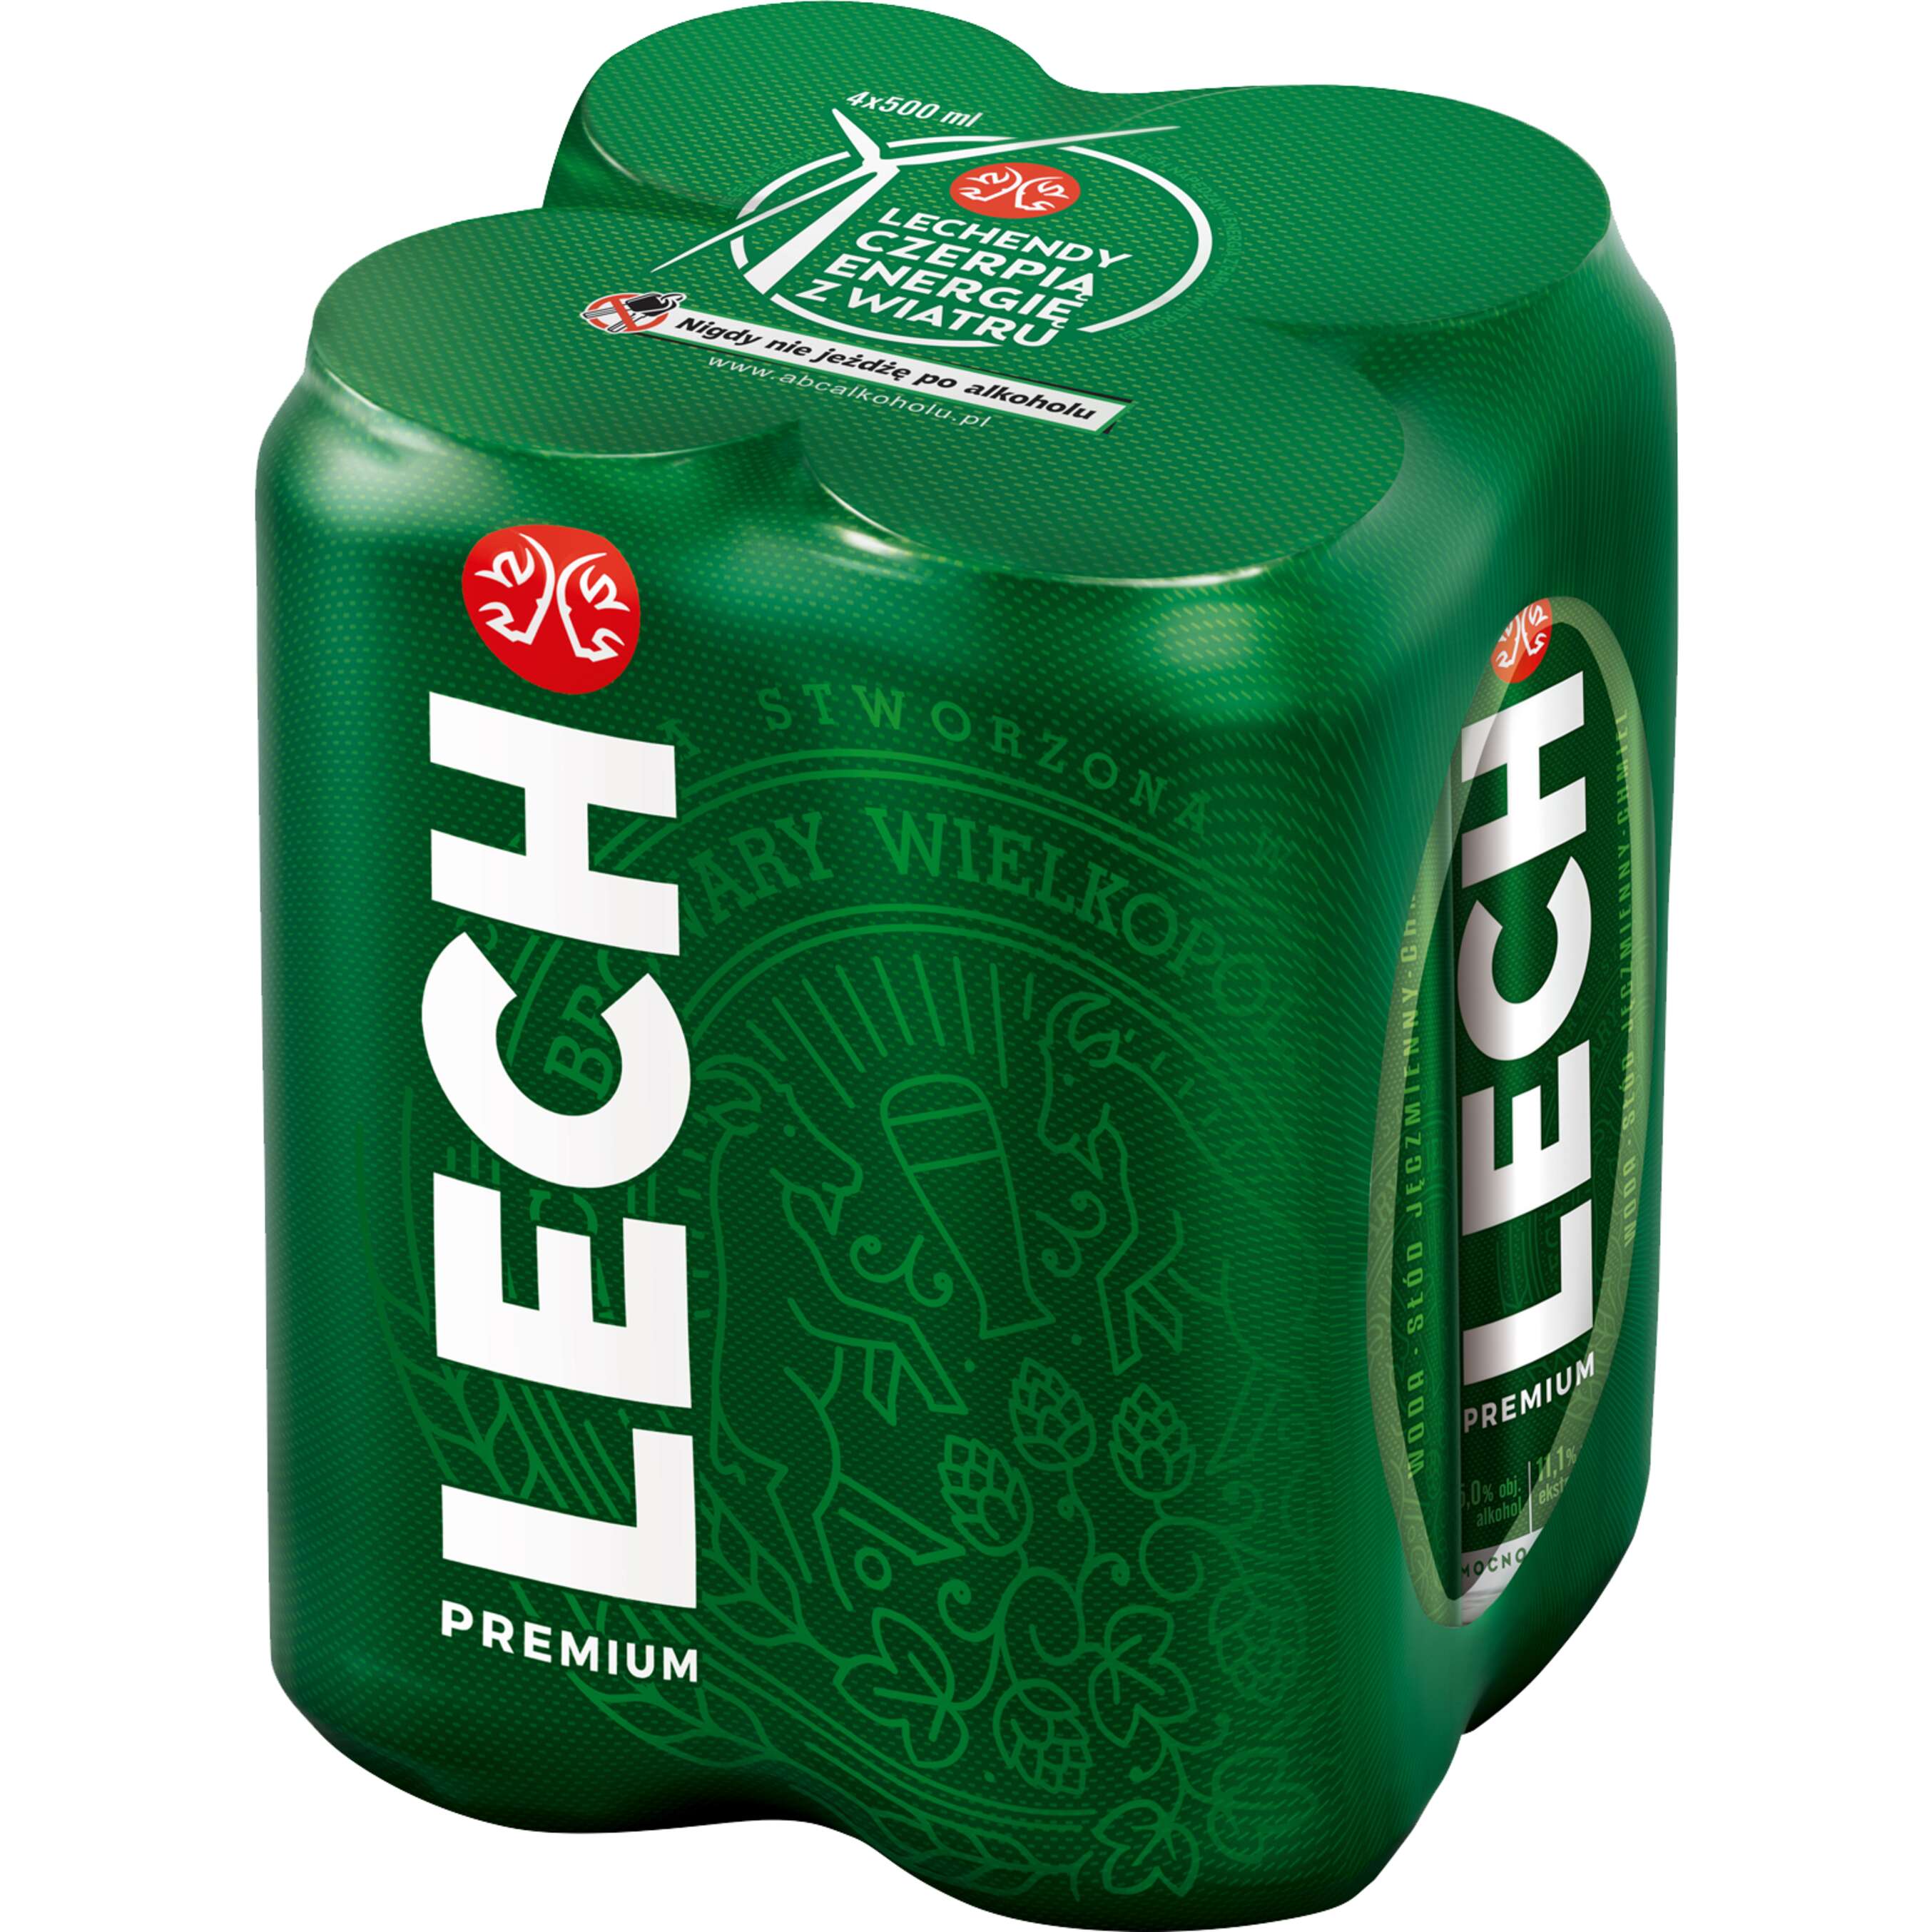 Zdjęcie oferty Lech Premium Piwo 5% alk.